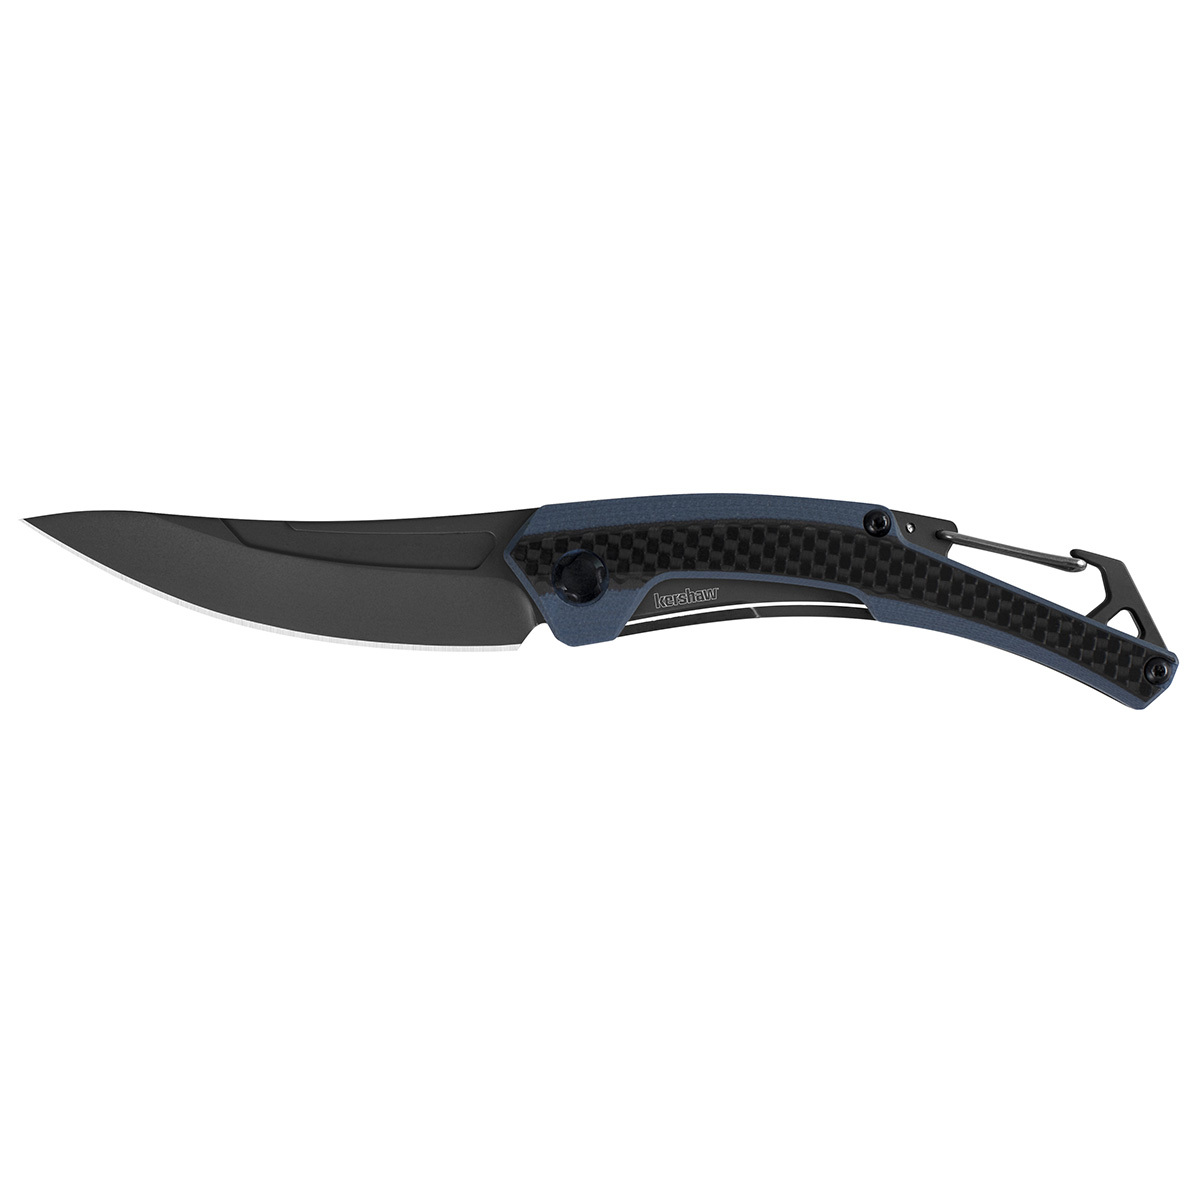 Складной нож Kershaw Reverb XL K1225, сталь 8Cr13MoV набор из 3 х ножей фиксированным клинком crkt black fork hunting knife set сталь 8cr13mov цельнометаллические